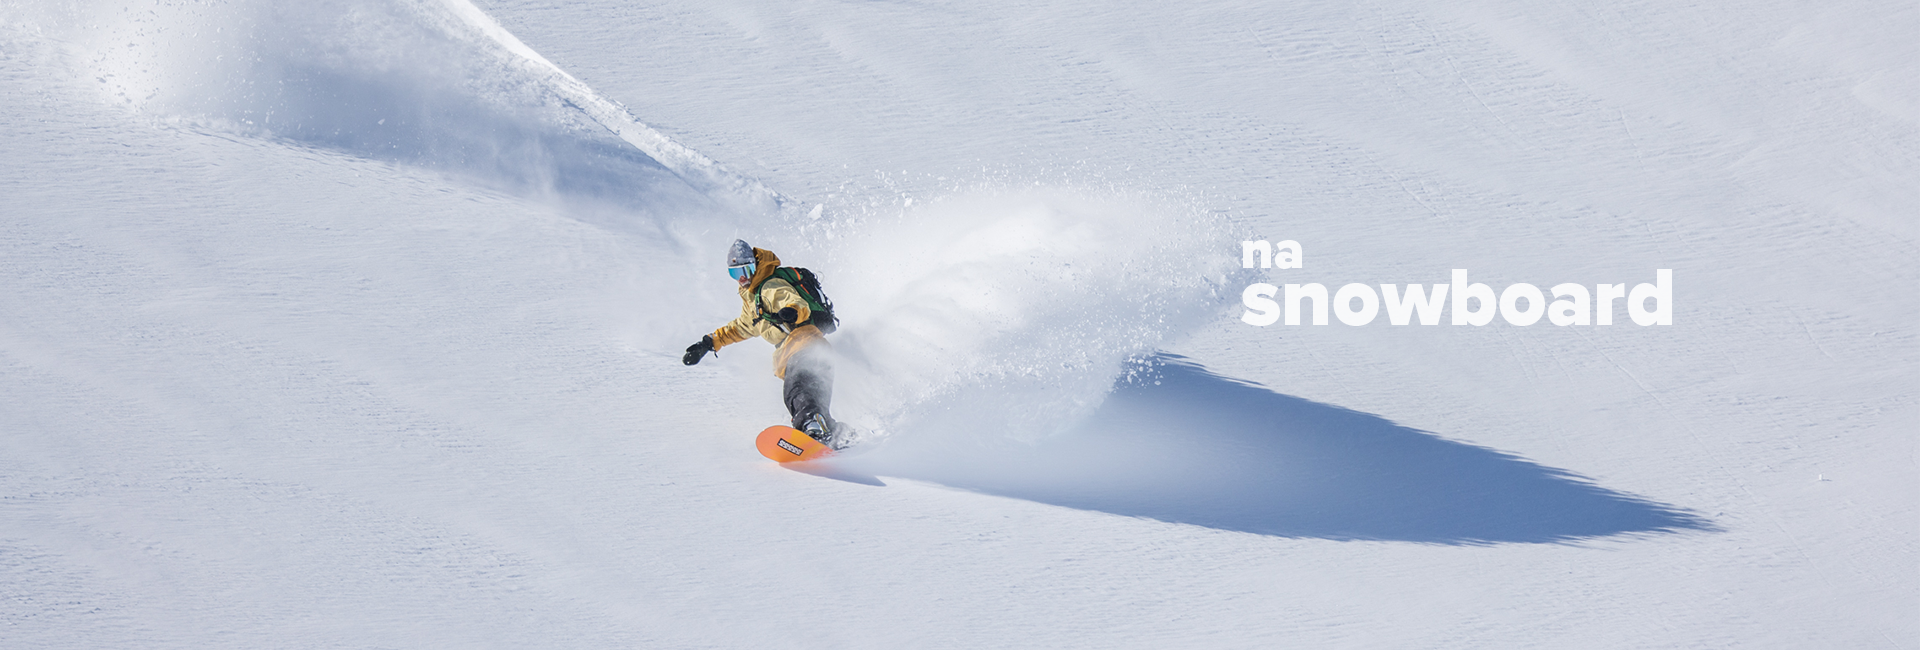 Wszytsko czego potrzebujesz na  snowboard